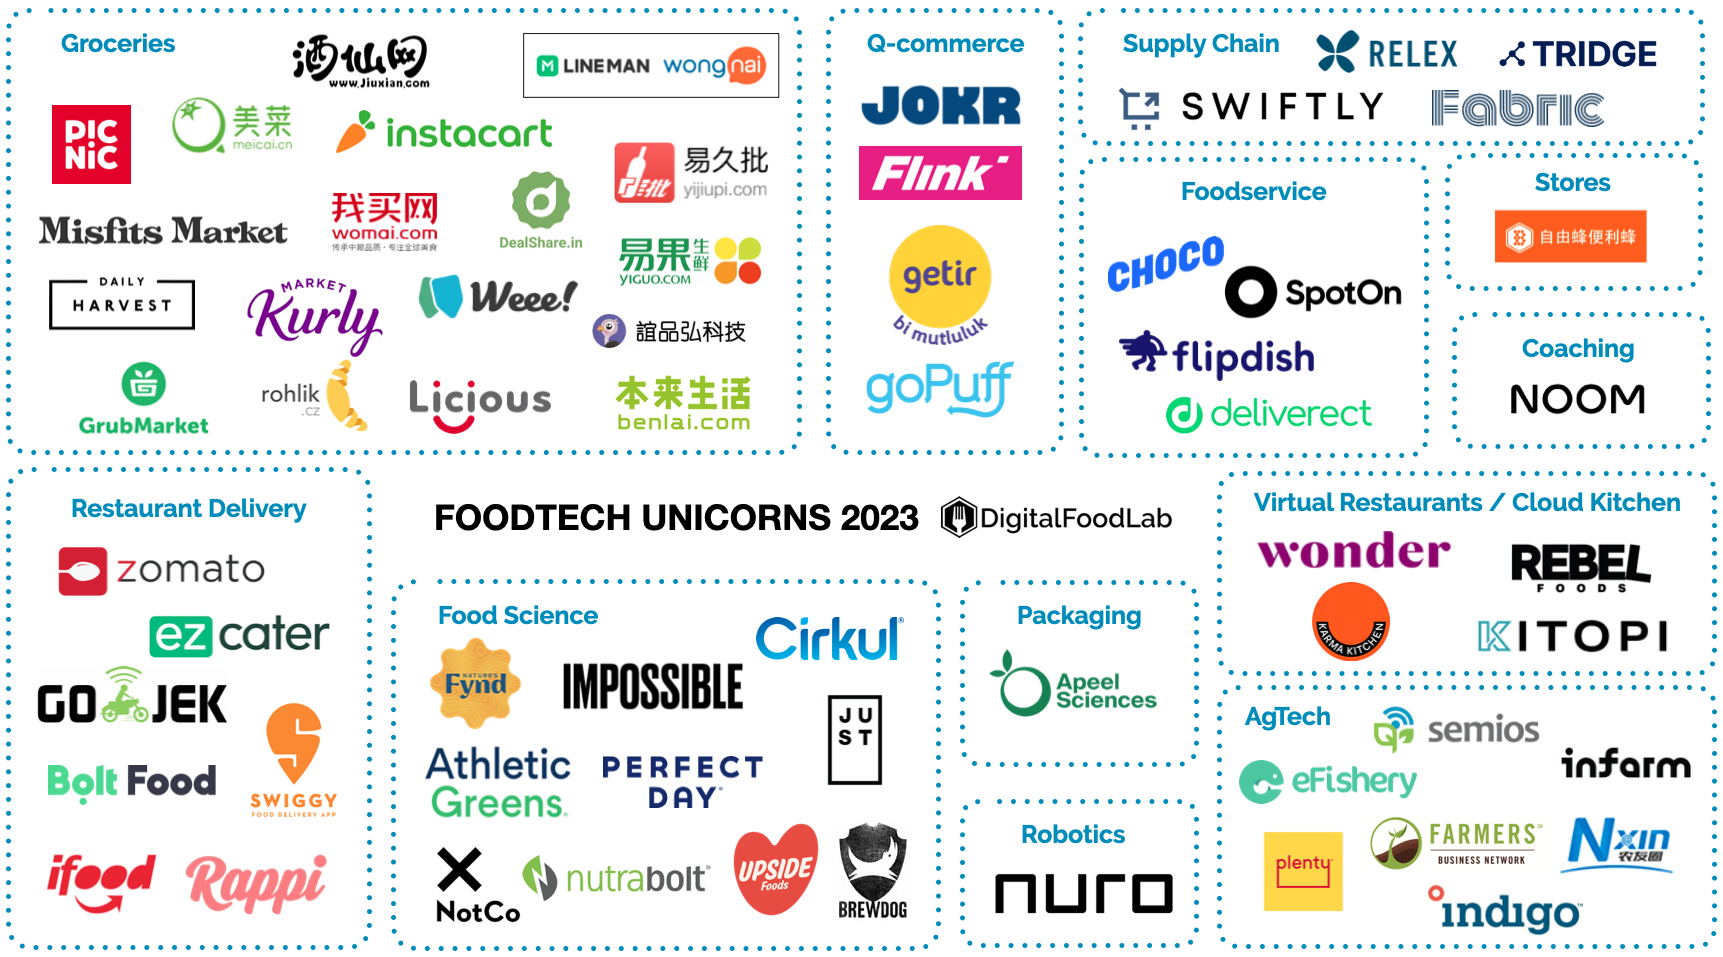 FoodTech unicorns 2023